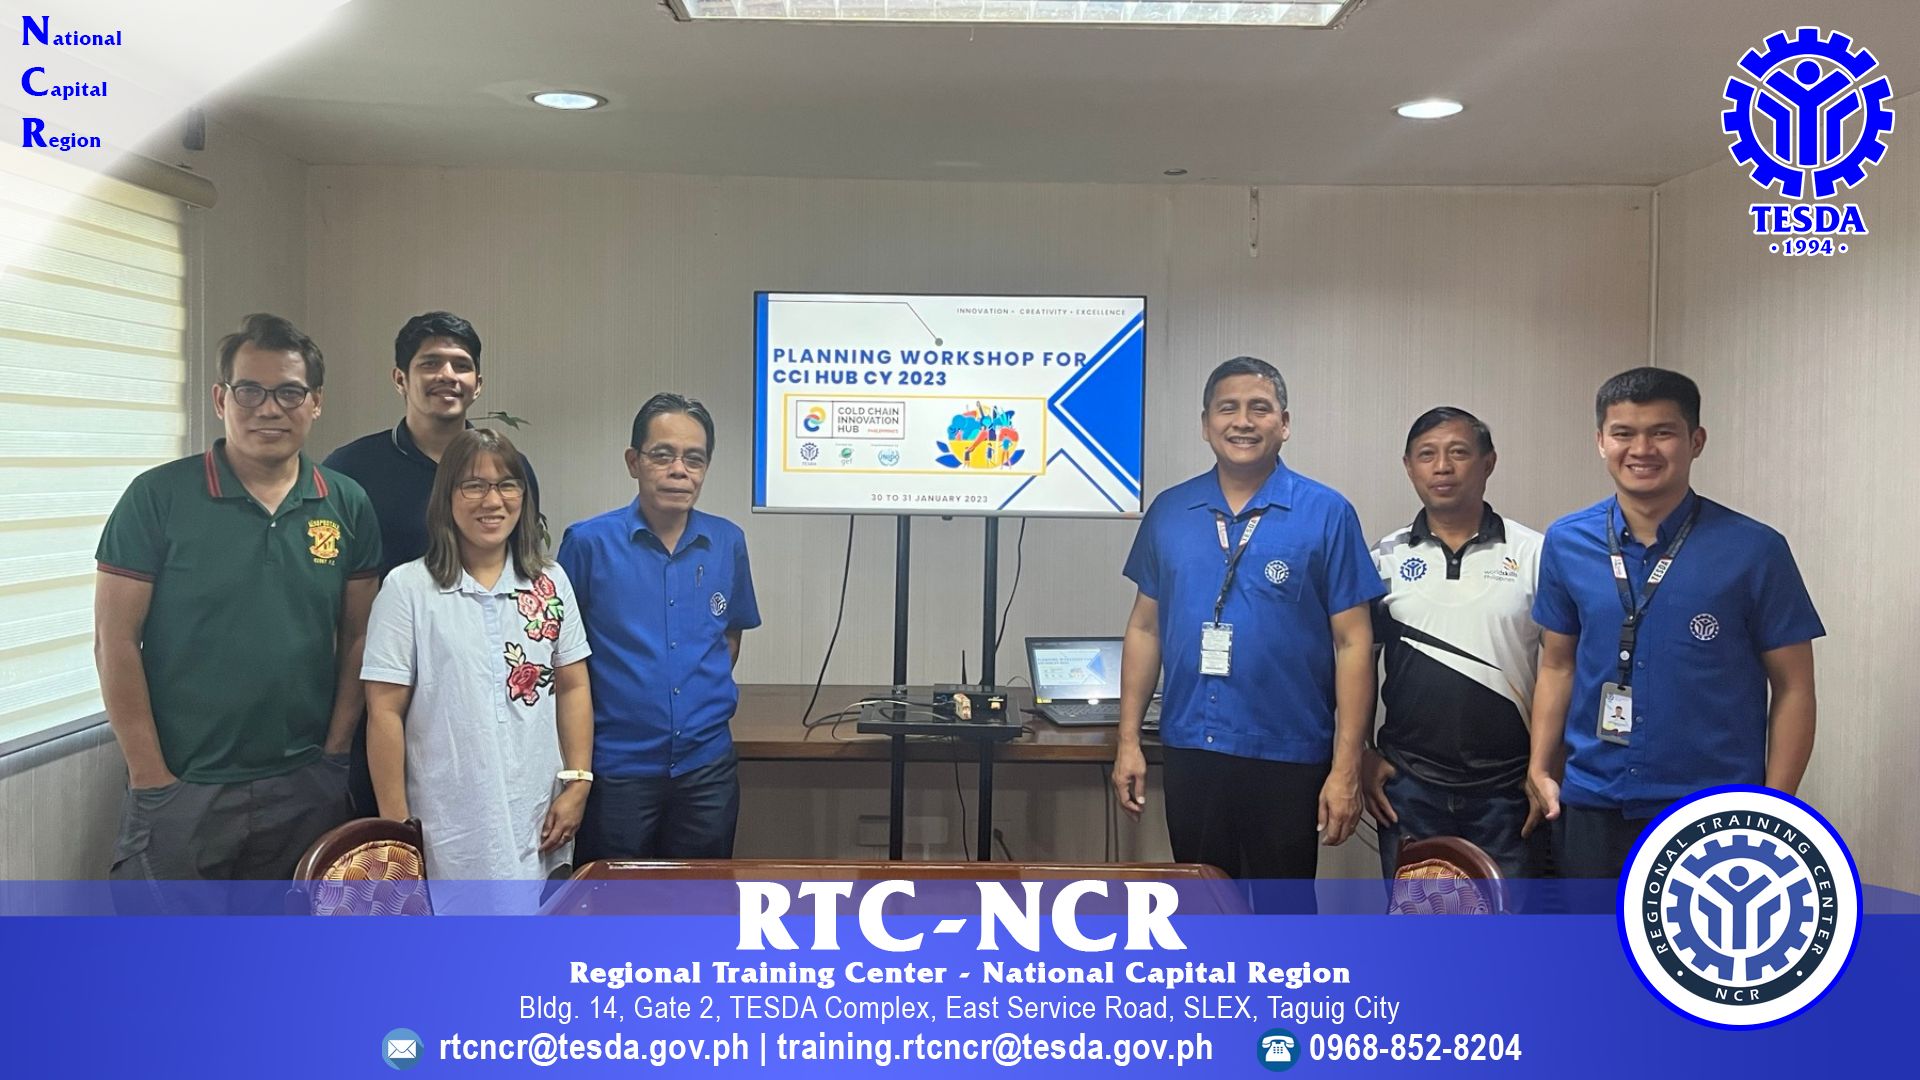 Feb 21- 9th RTC-NCR Advisory Council Meeting